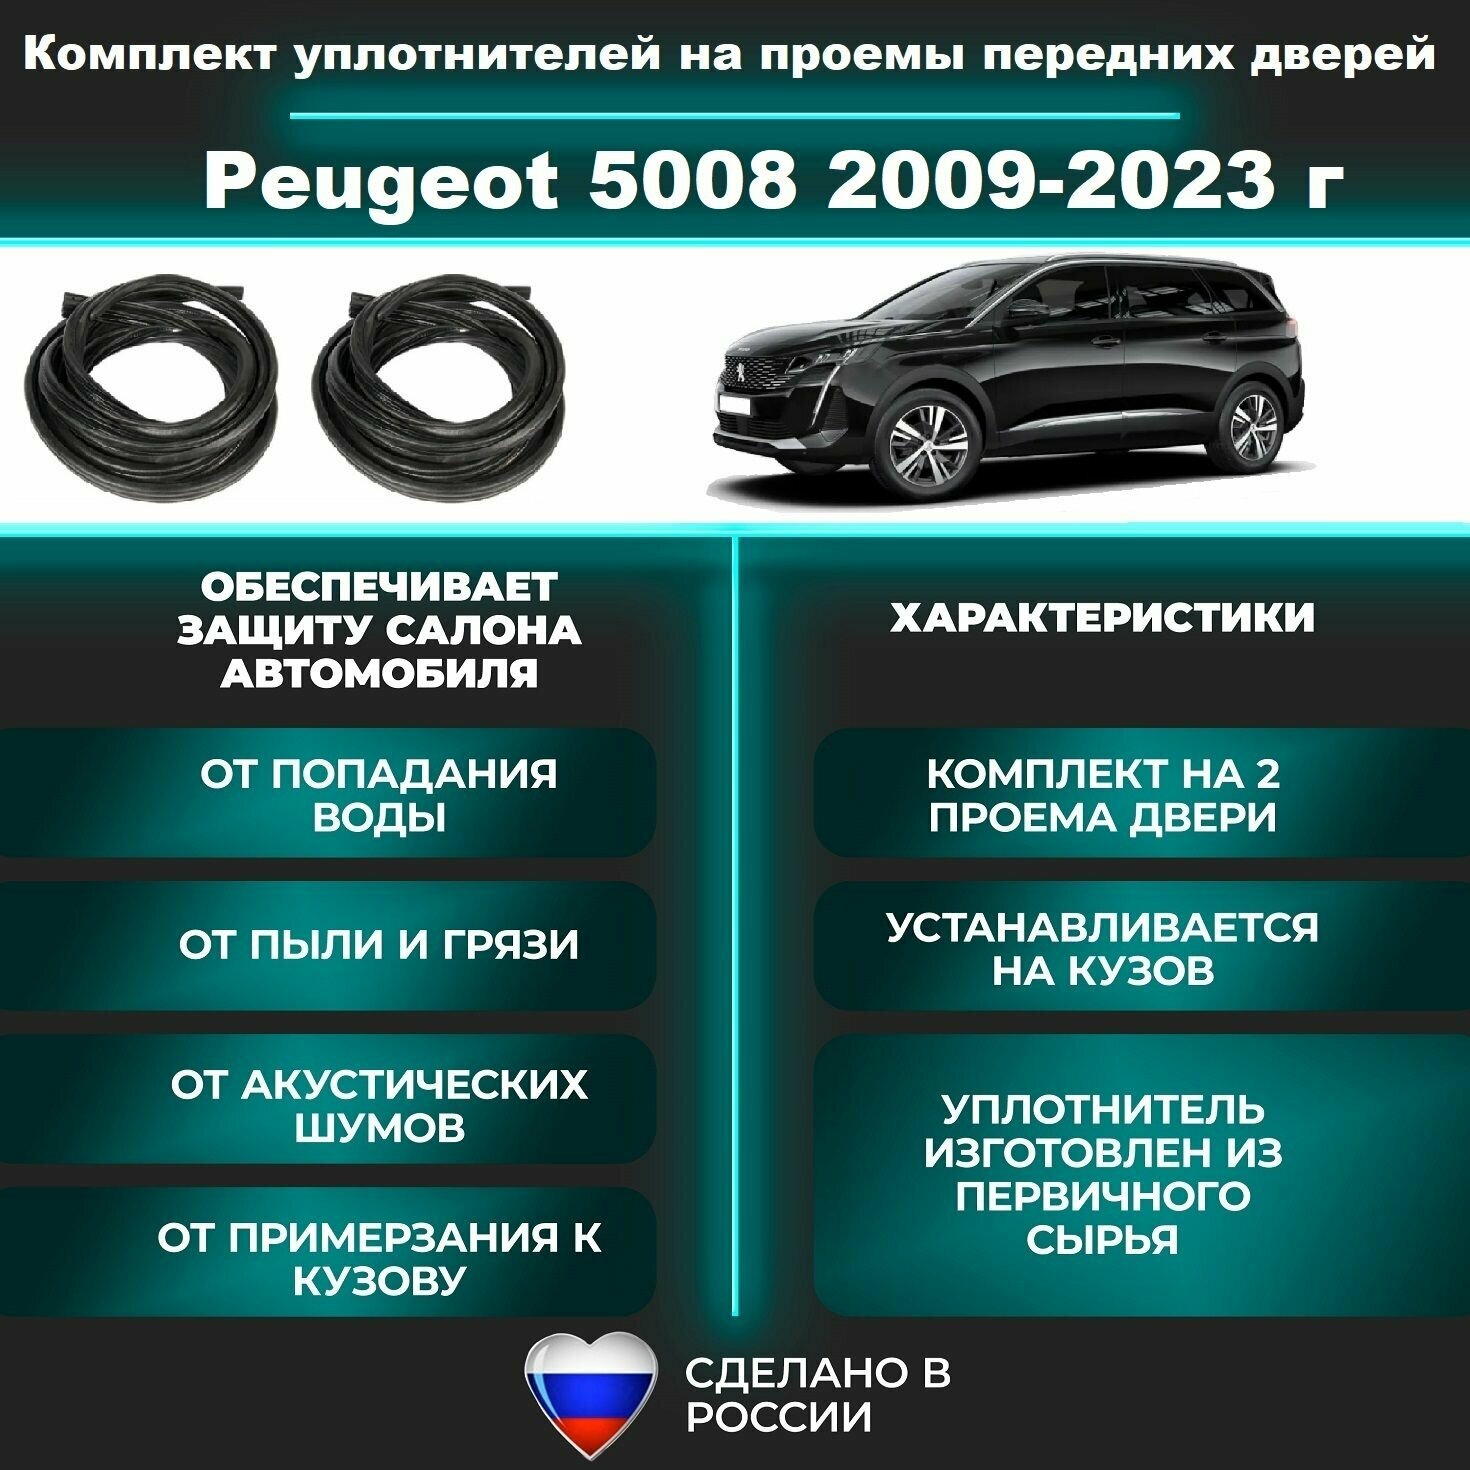 Комплект уплотнителей проема передних дверей на Peugeot 5008 2009-2023 г / уплотнитель для Пежо / Пежот 5008